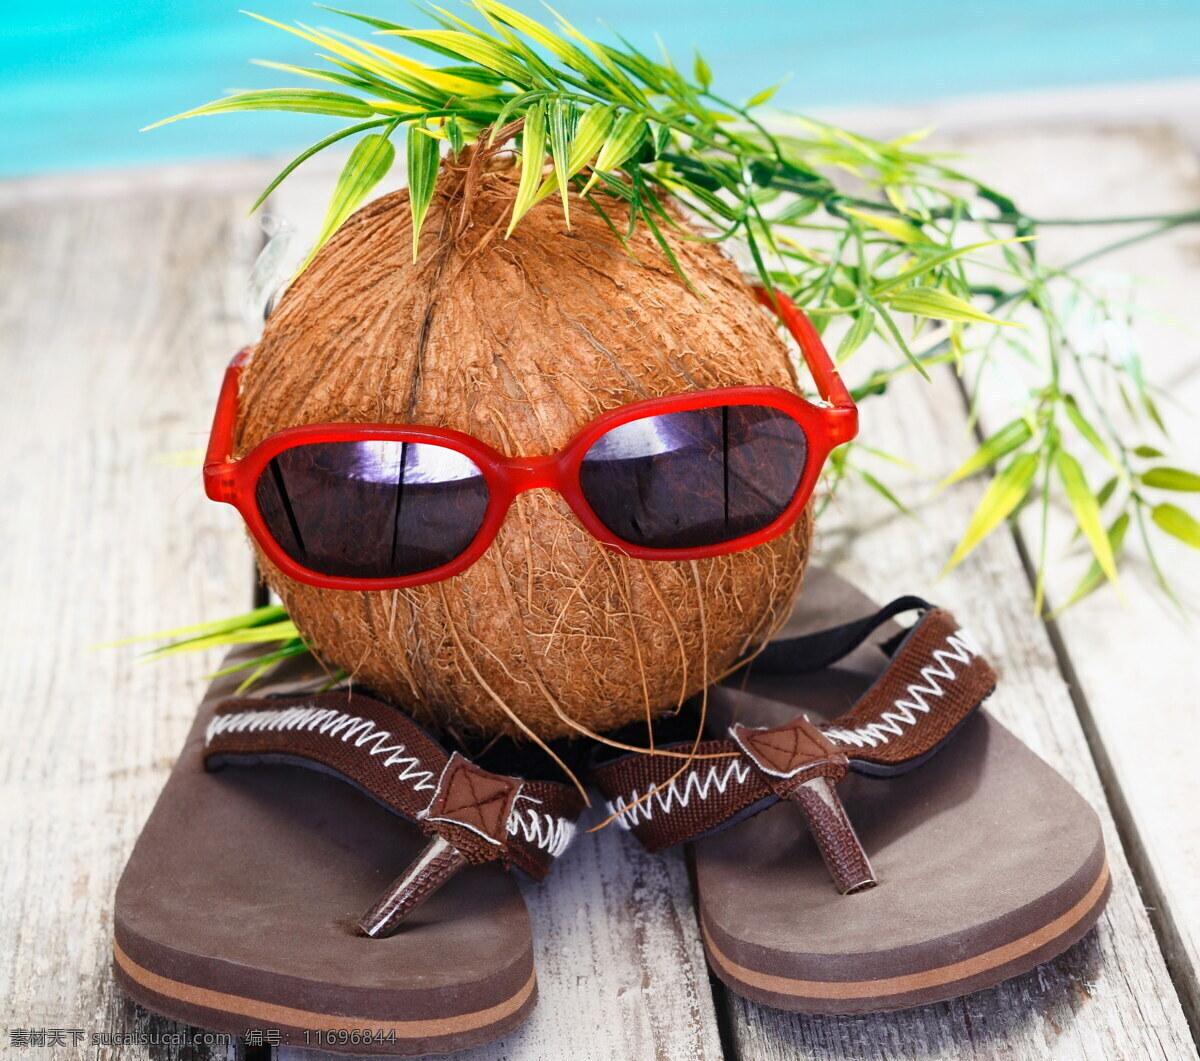 椰子 太阳镜 拖鞋 人字拖 墨镜 眼镜 海边 木板 夏季 夏天来了 生活百科 娱乐休闲